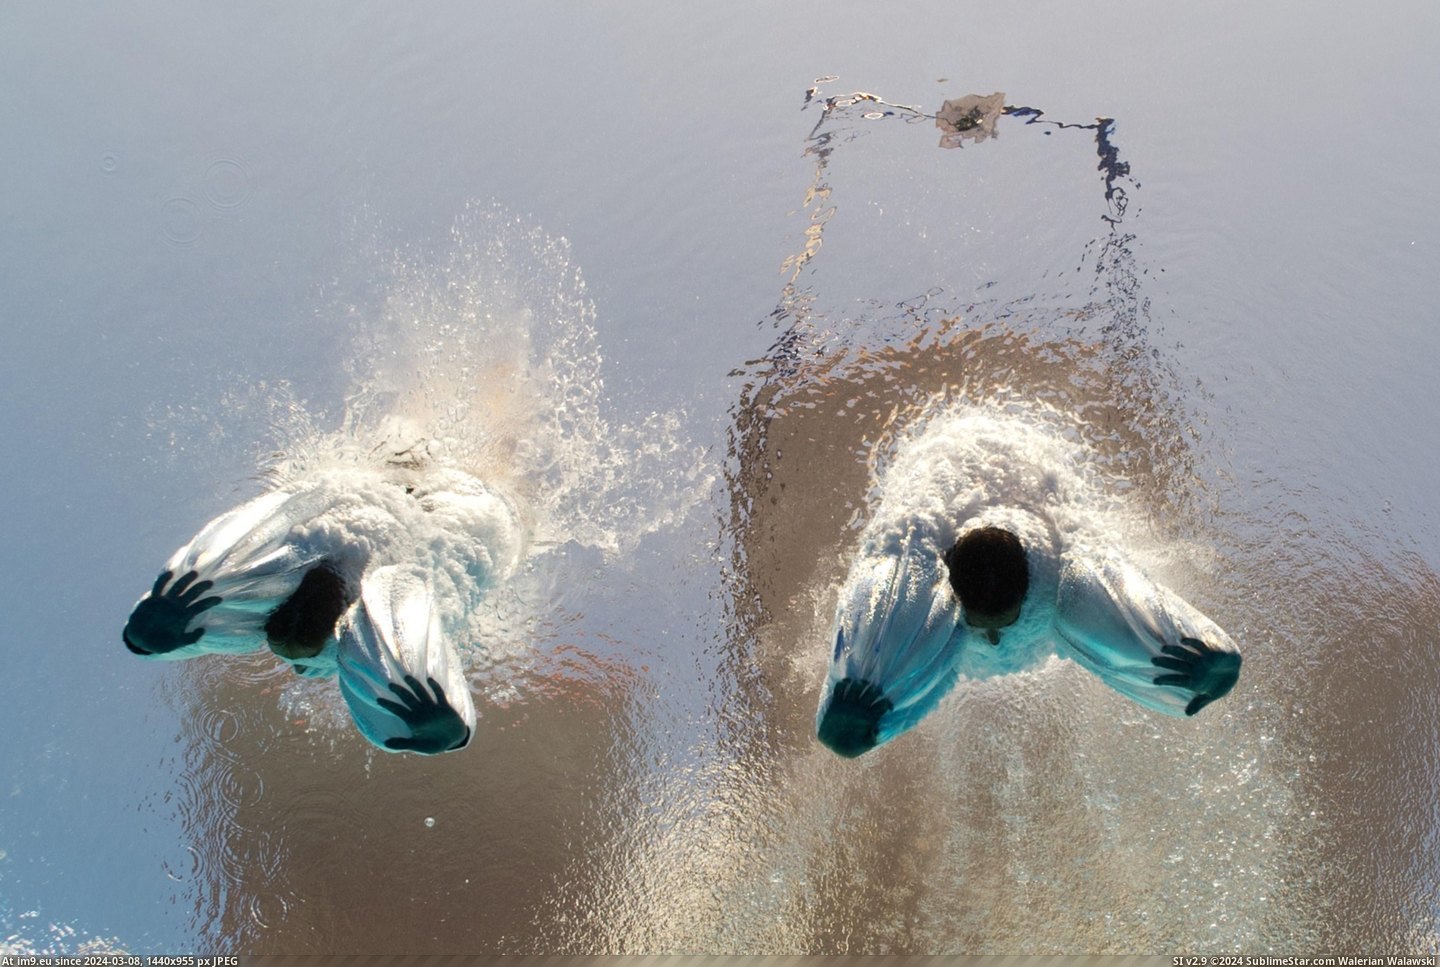  #Splash  [Pics] After the splash Pic. (Изображение из альбом My r/PICS favs))